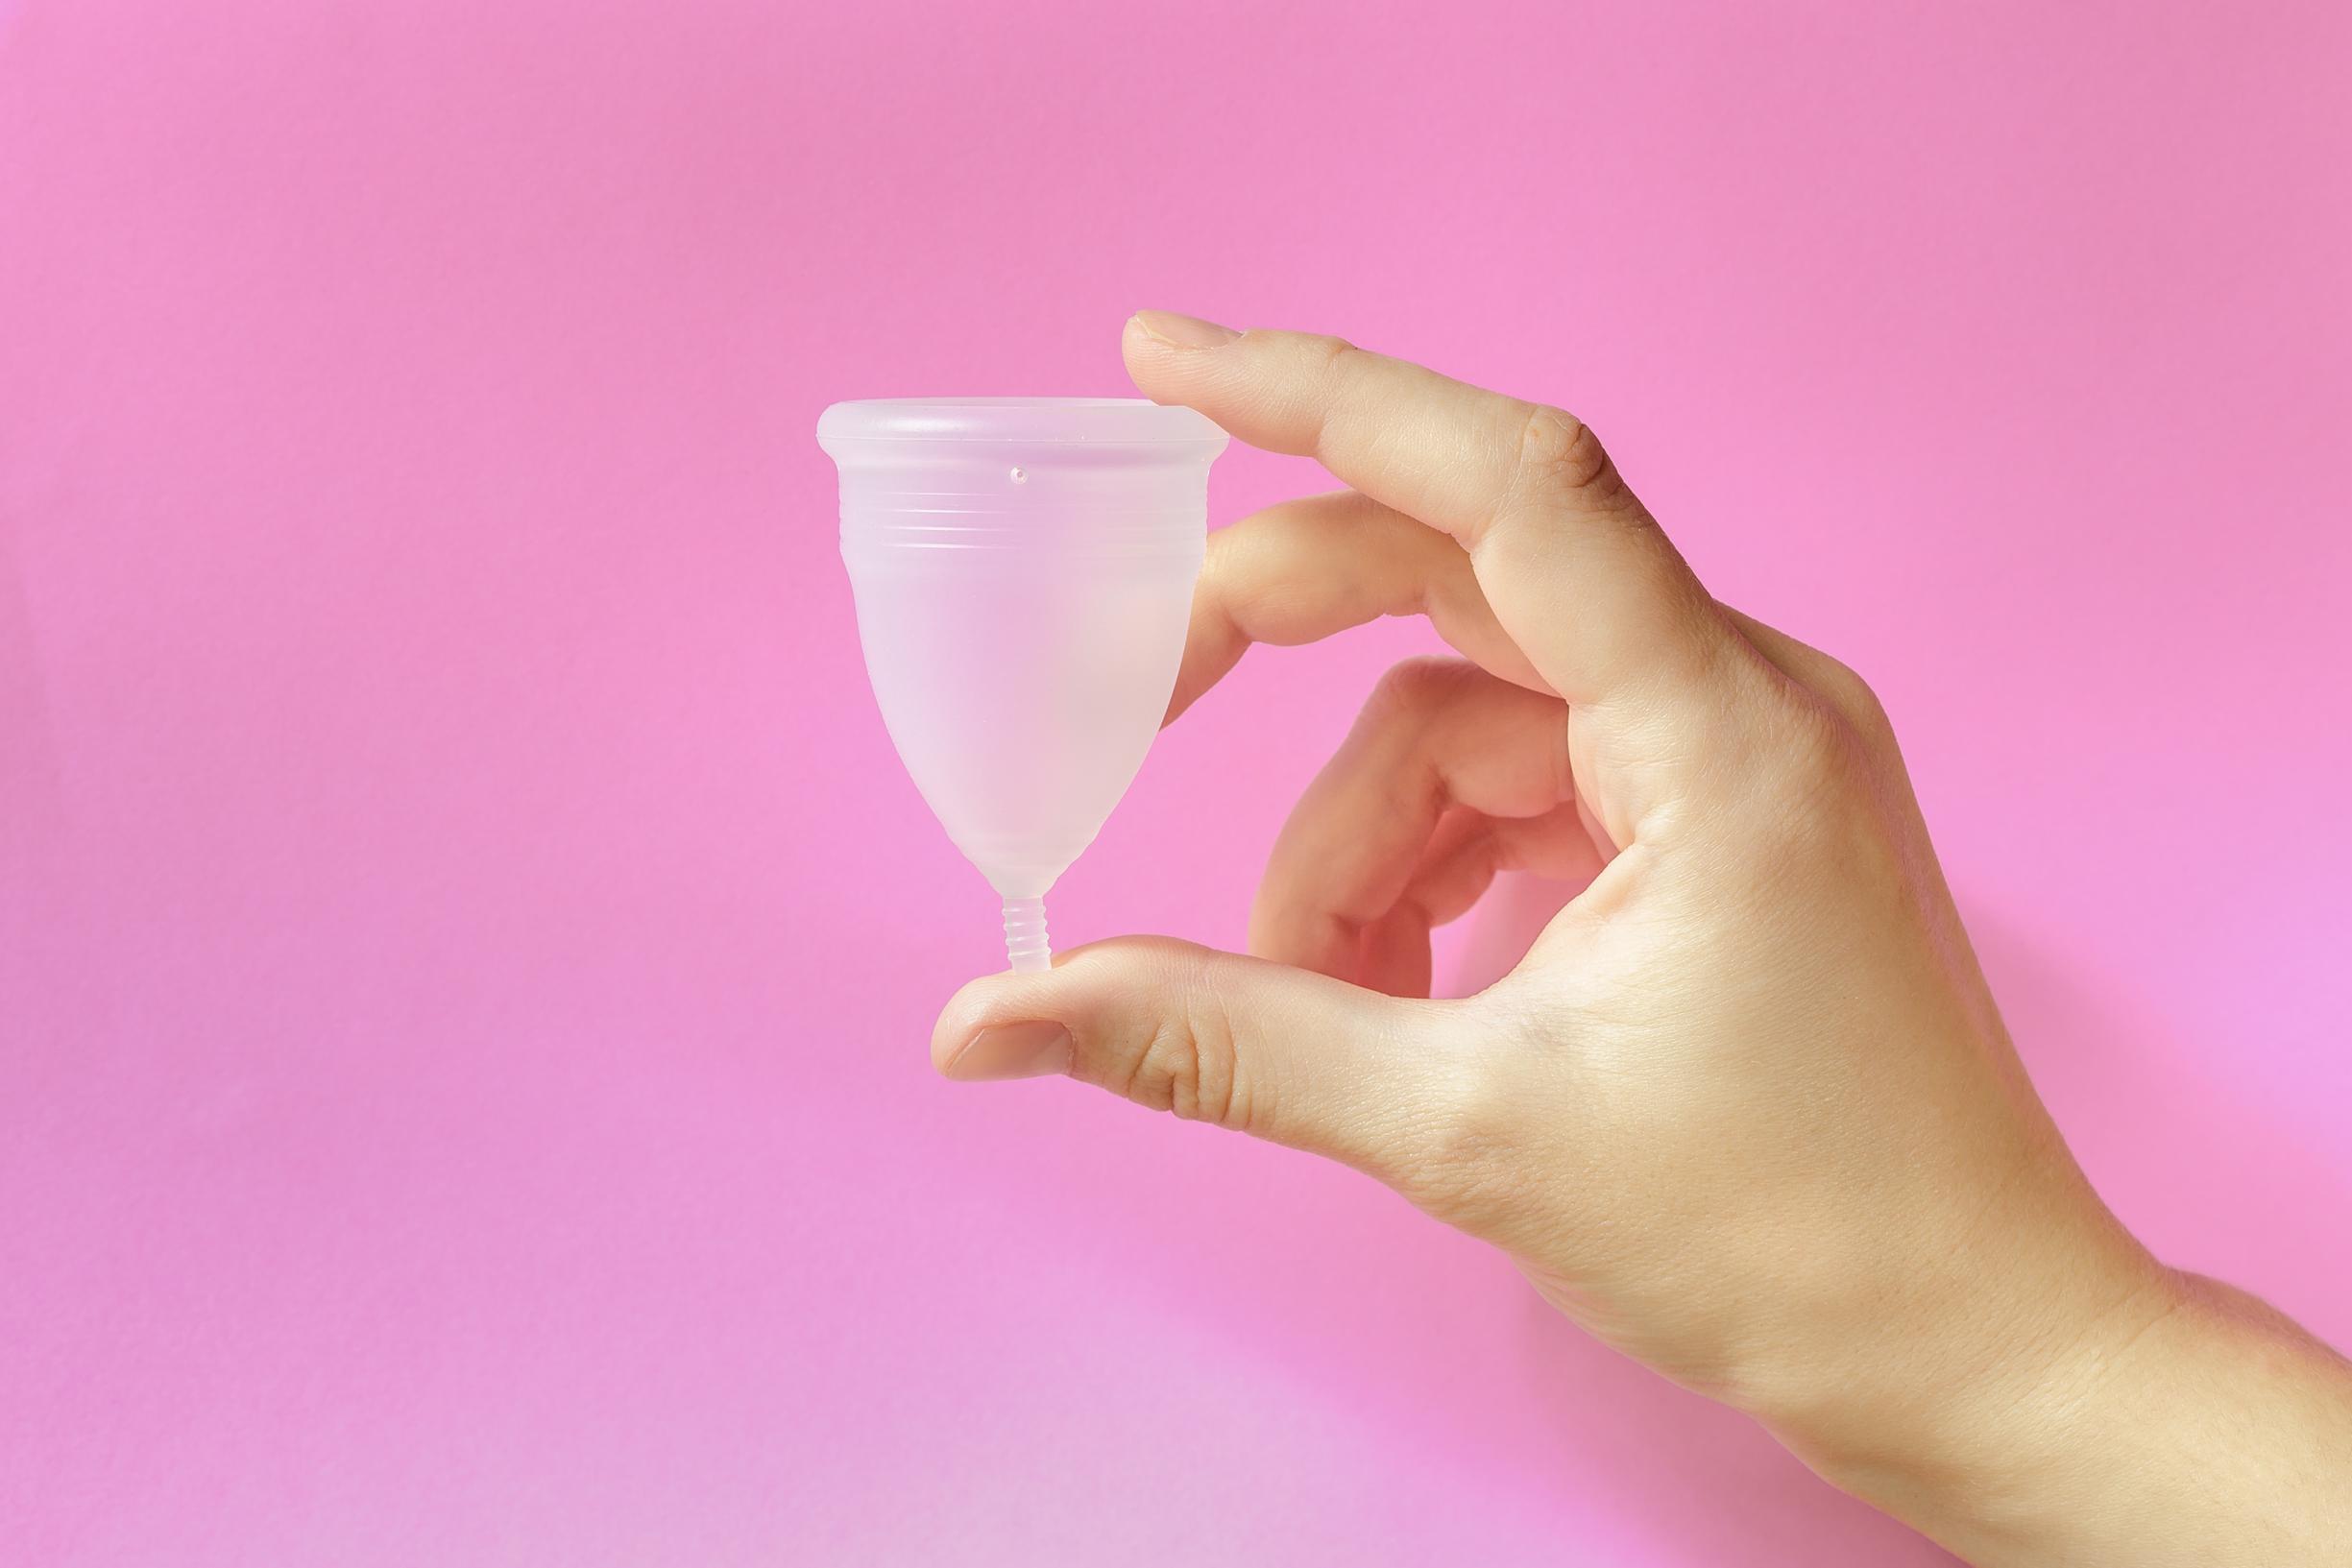 geeft gratis menstruatiecups menstruatiearmoede: “What the cup?!” Het Nieuwsblad Mobile